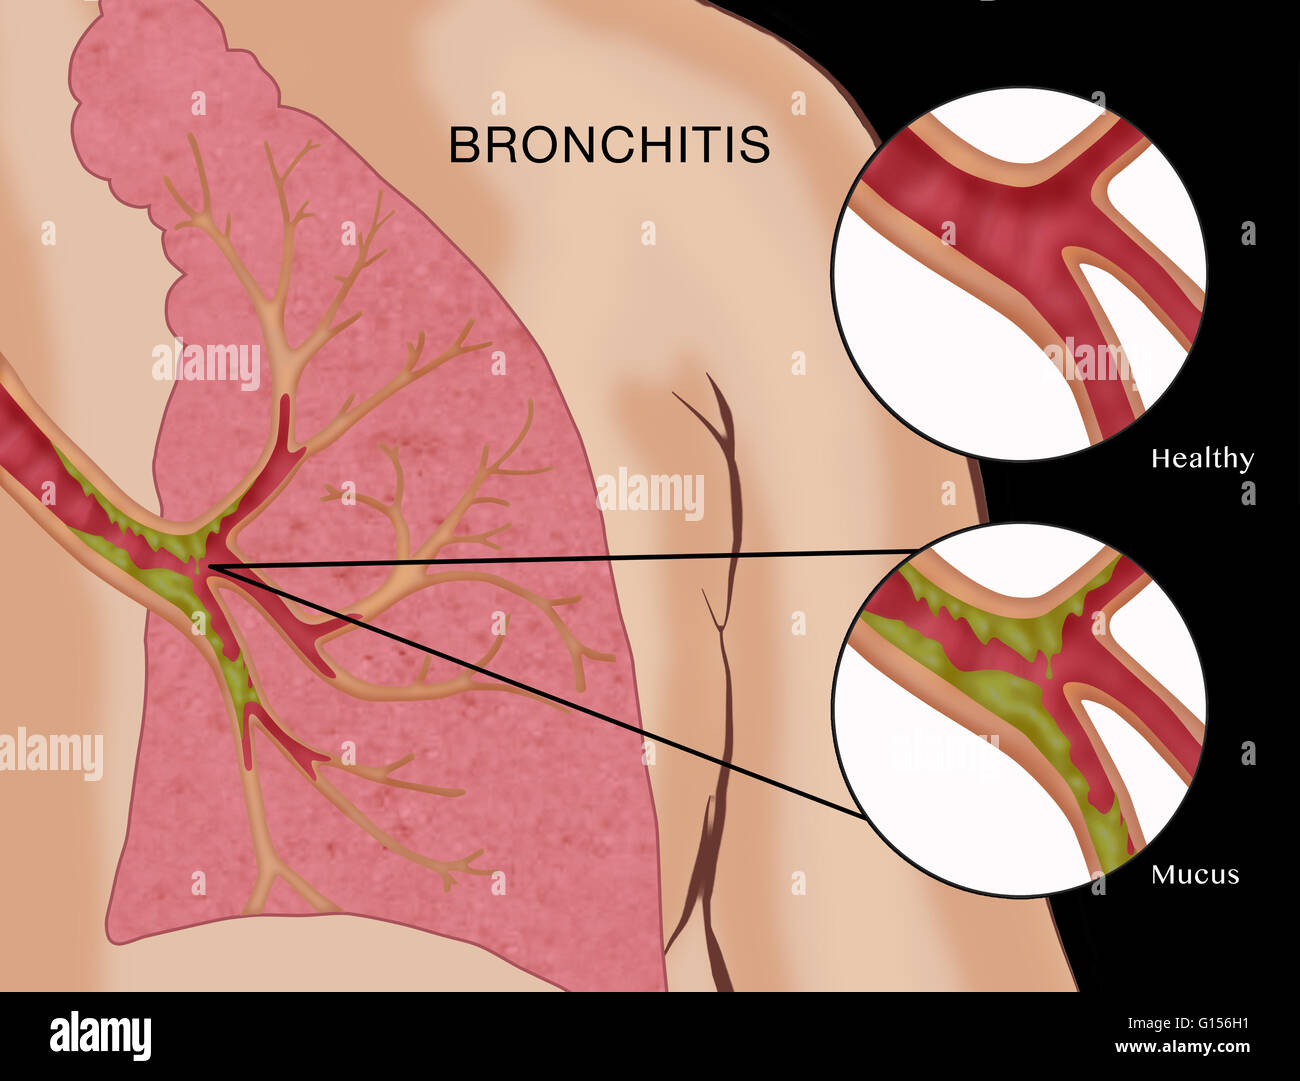 Illustration de la bronchite, une maladie dans laquelle les muqueuses des  bronches (voies respiratoires dans les poumons) deviennent enflammés et  bouchés par du mucus. Il y a deux types : aiguë et